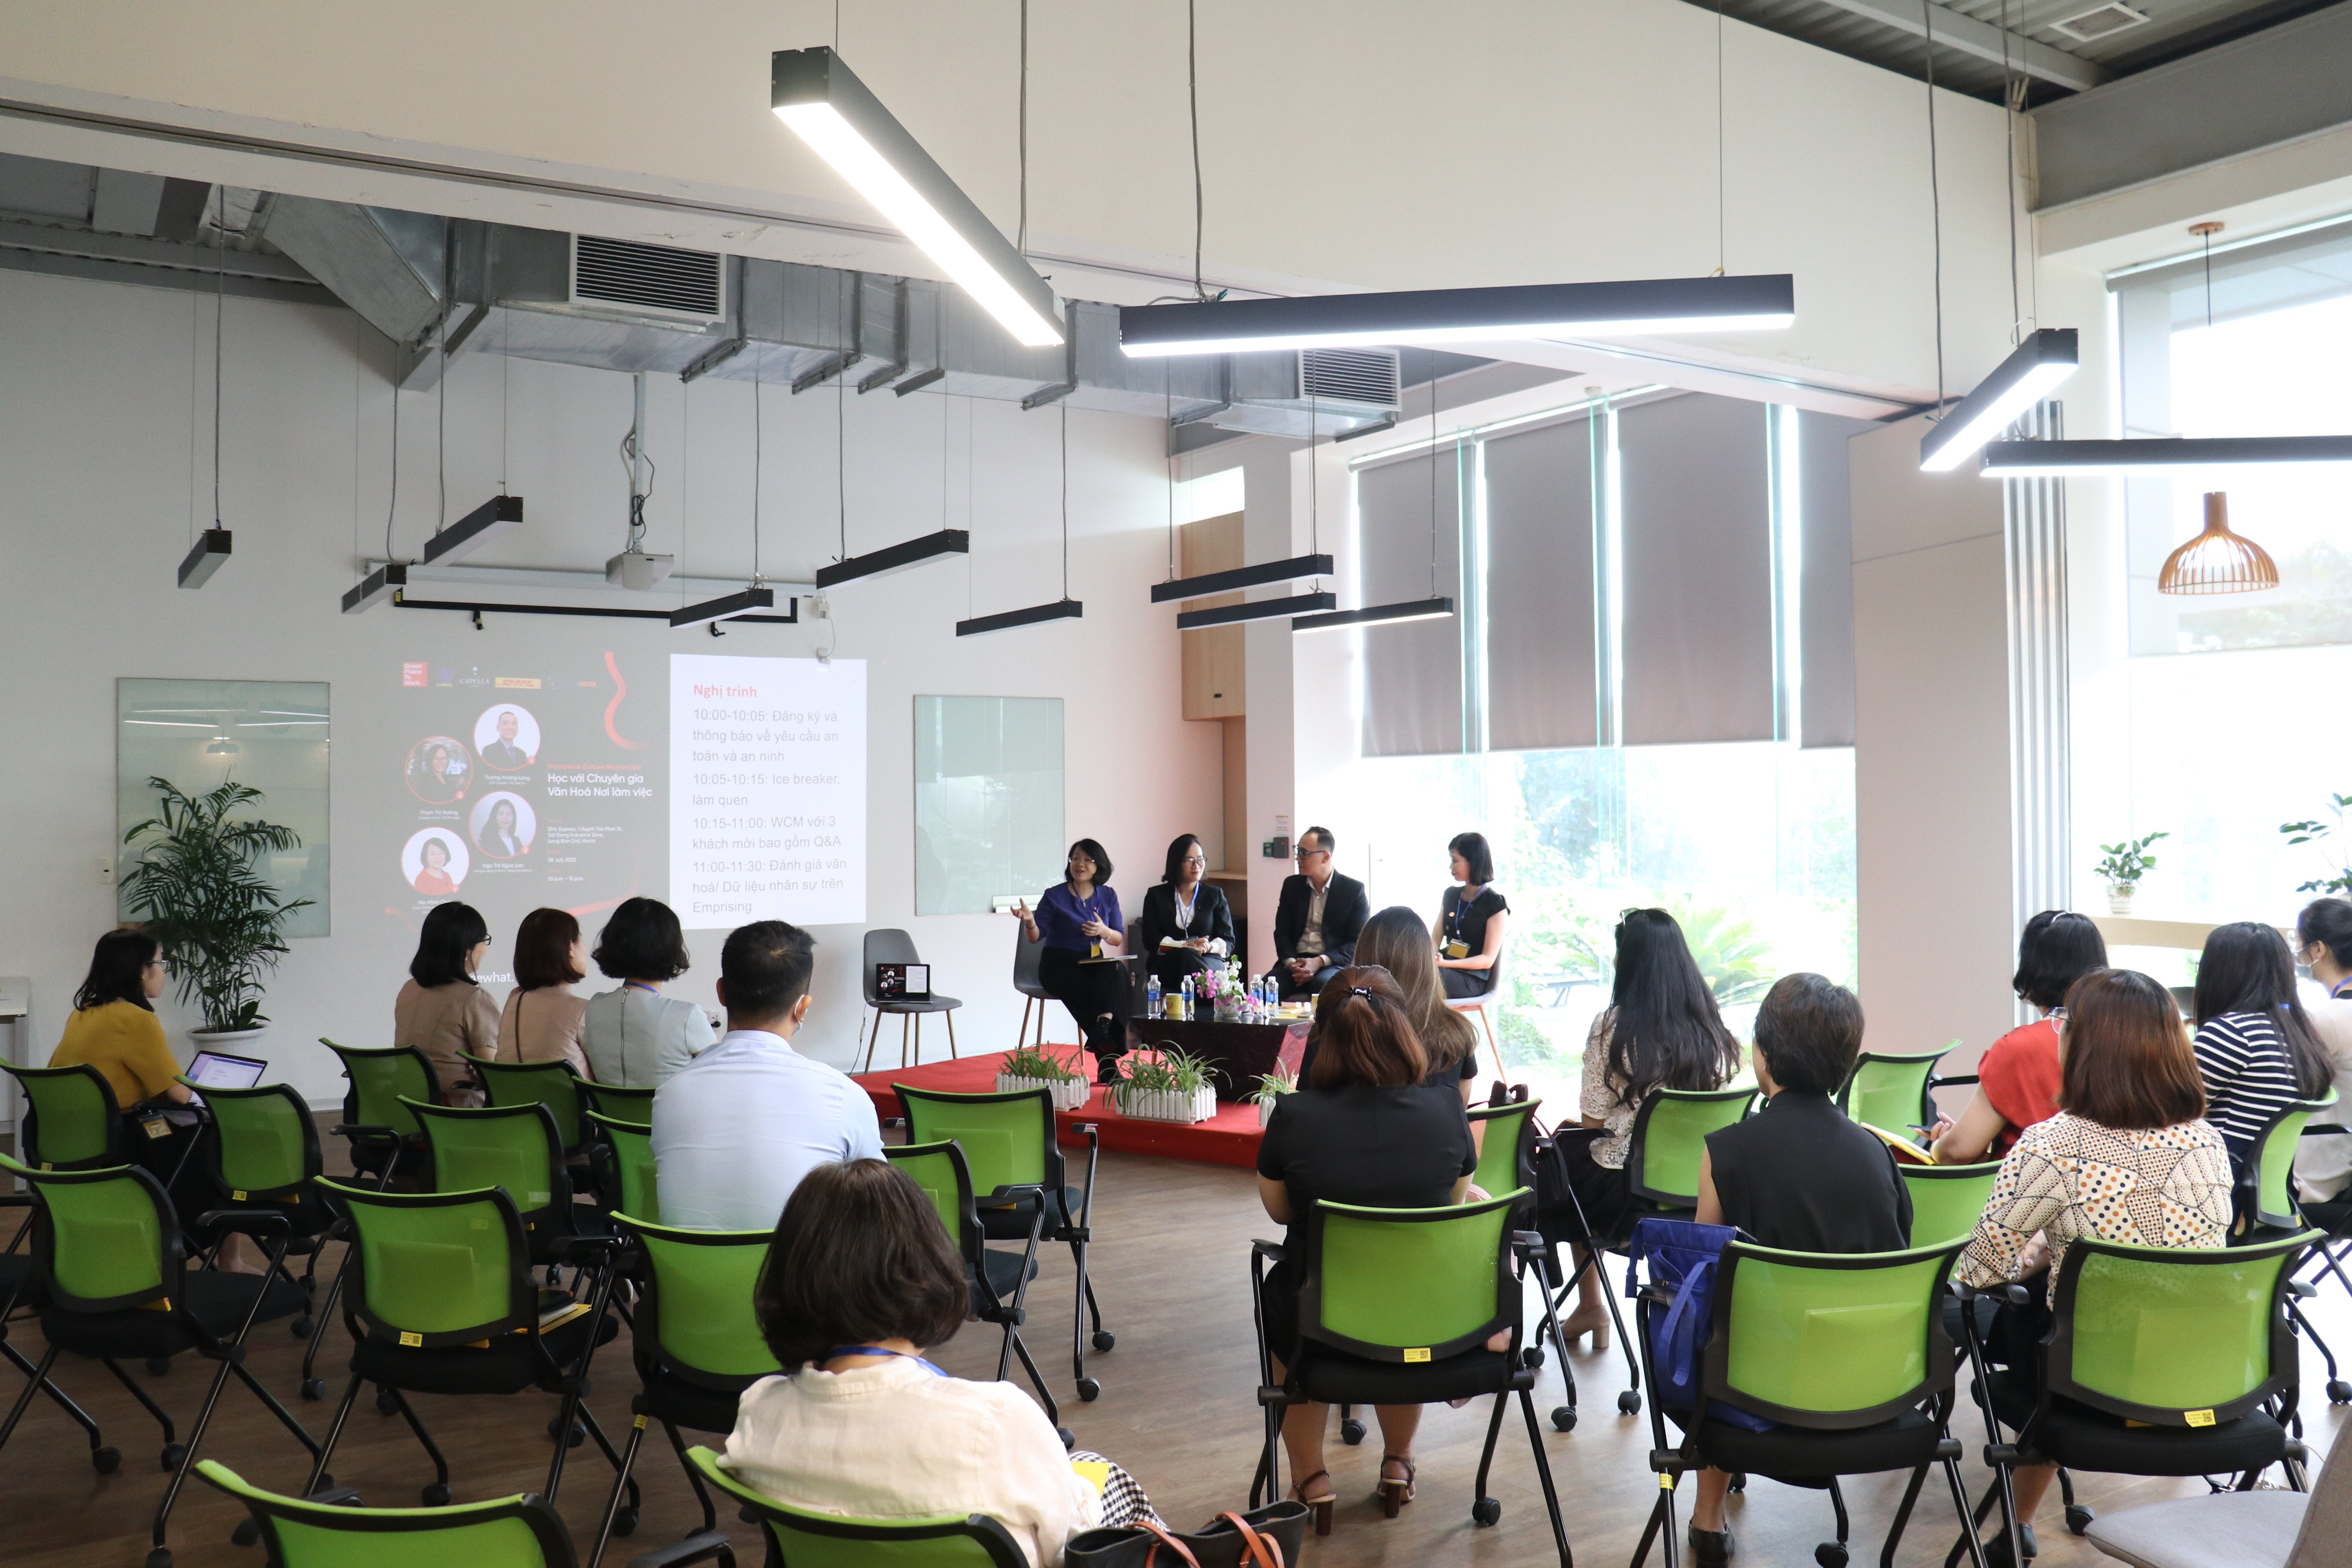 Hội thảo 'Học với Chuyên gia văn hoá nơi làm việc' dành cho hội viên của Hiệp hội Nhân sự (HRA) tại Trung tâm khai thác phía Đông Hà Nội của DHL Express Việt Nam.